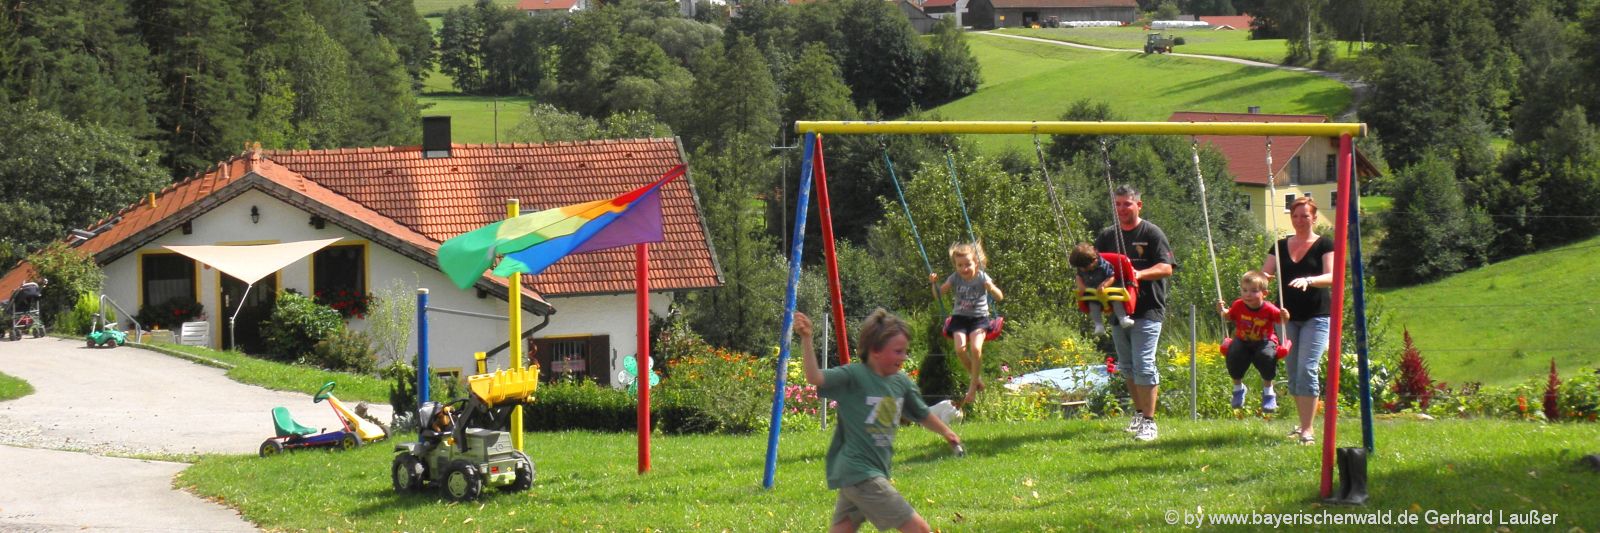 Kinderbauernhof in Bayern Ferien mit Kindern am Bauernhof